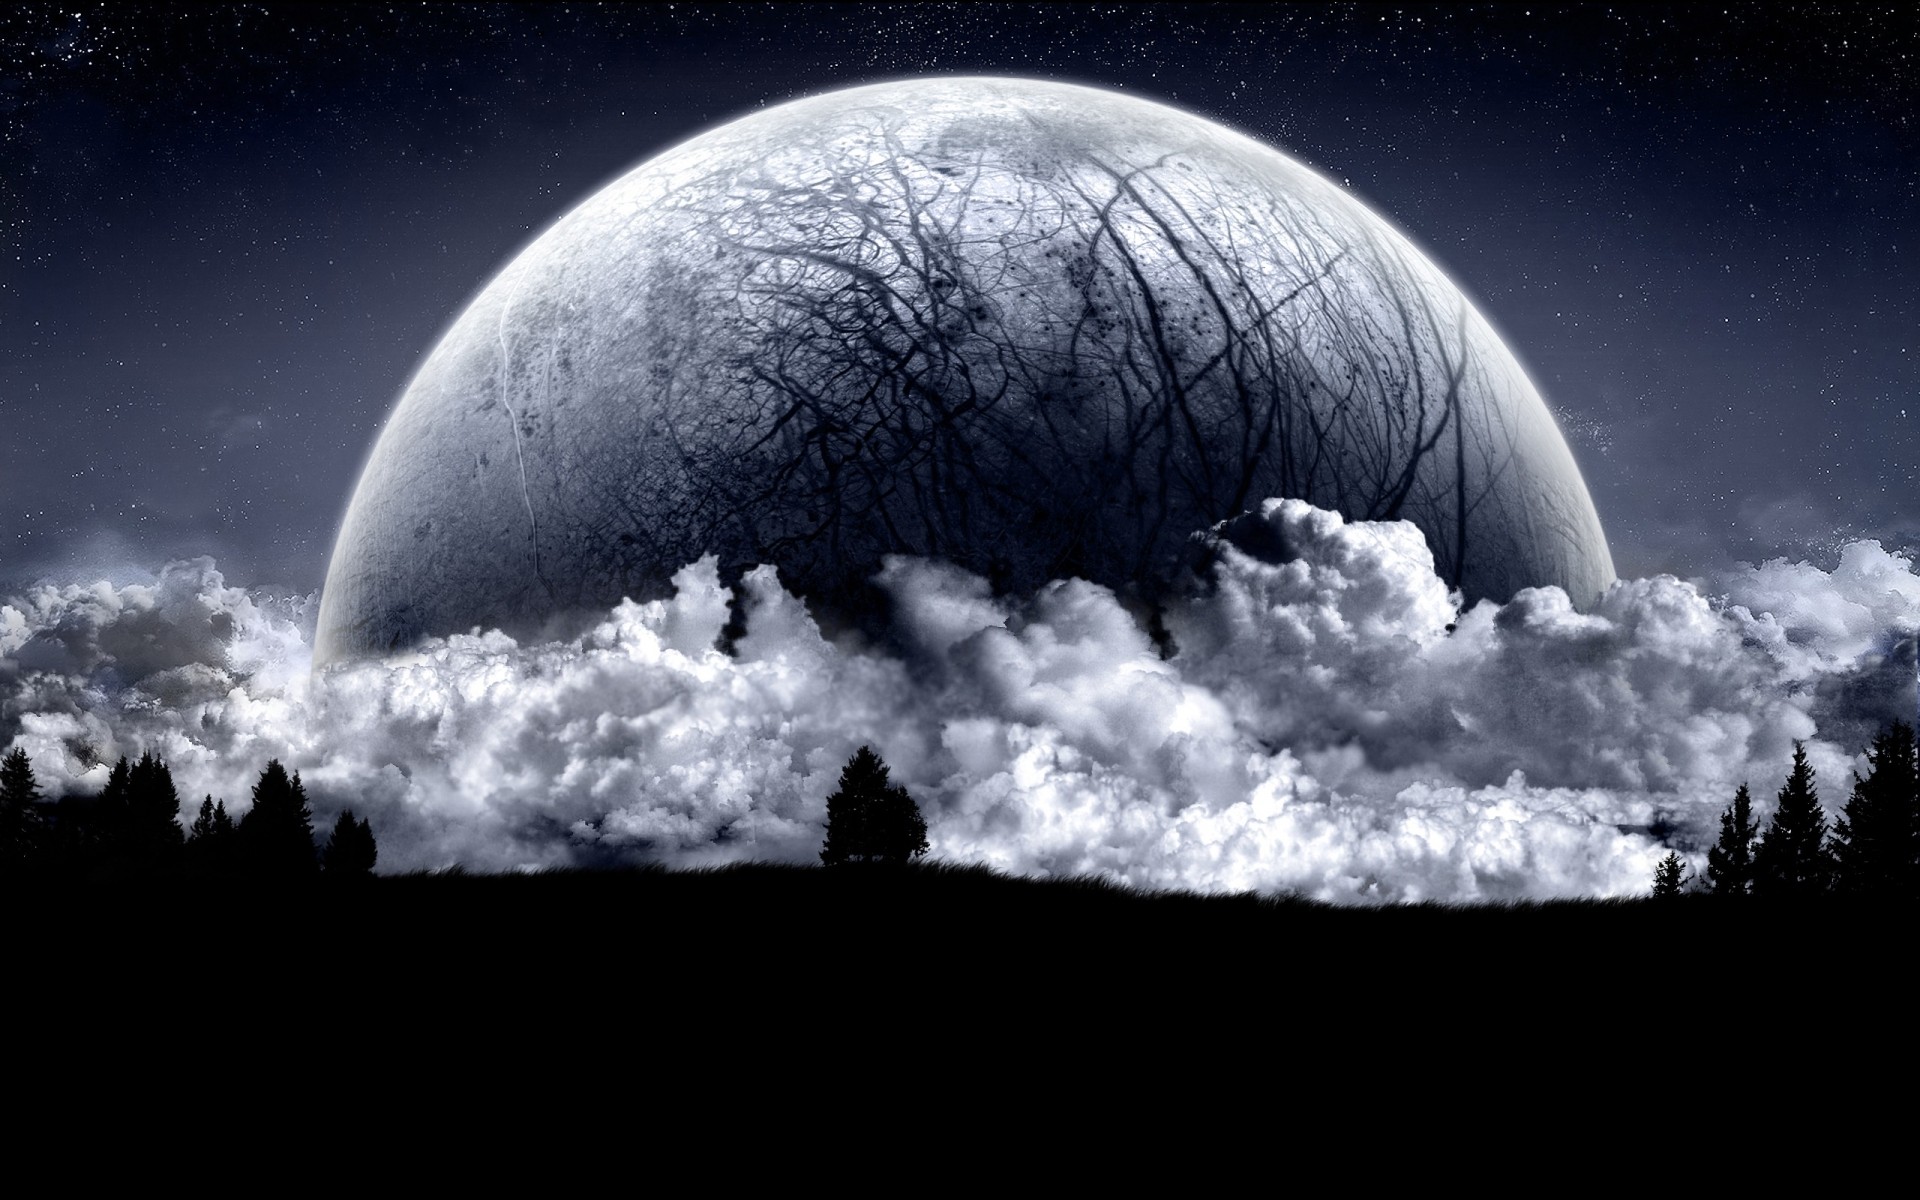 фотообработка луна астрономия планеты небо наука пейзаж атмосфера пространство темный свет галактика природа разведка солнце ночь